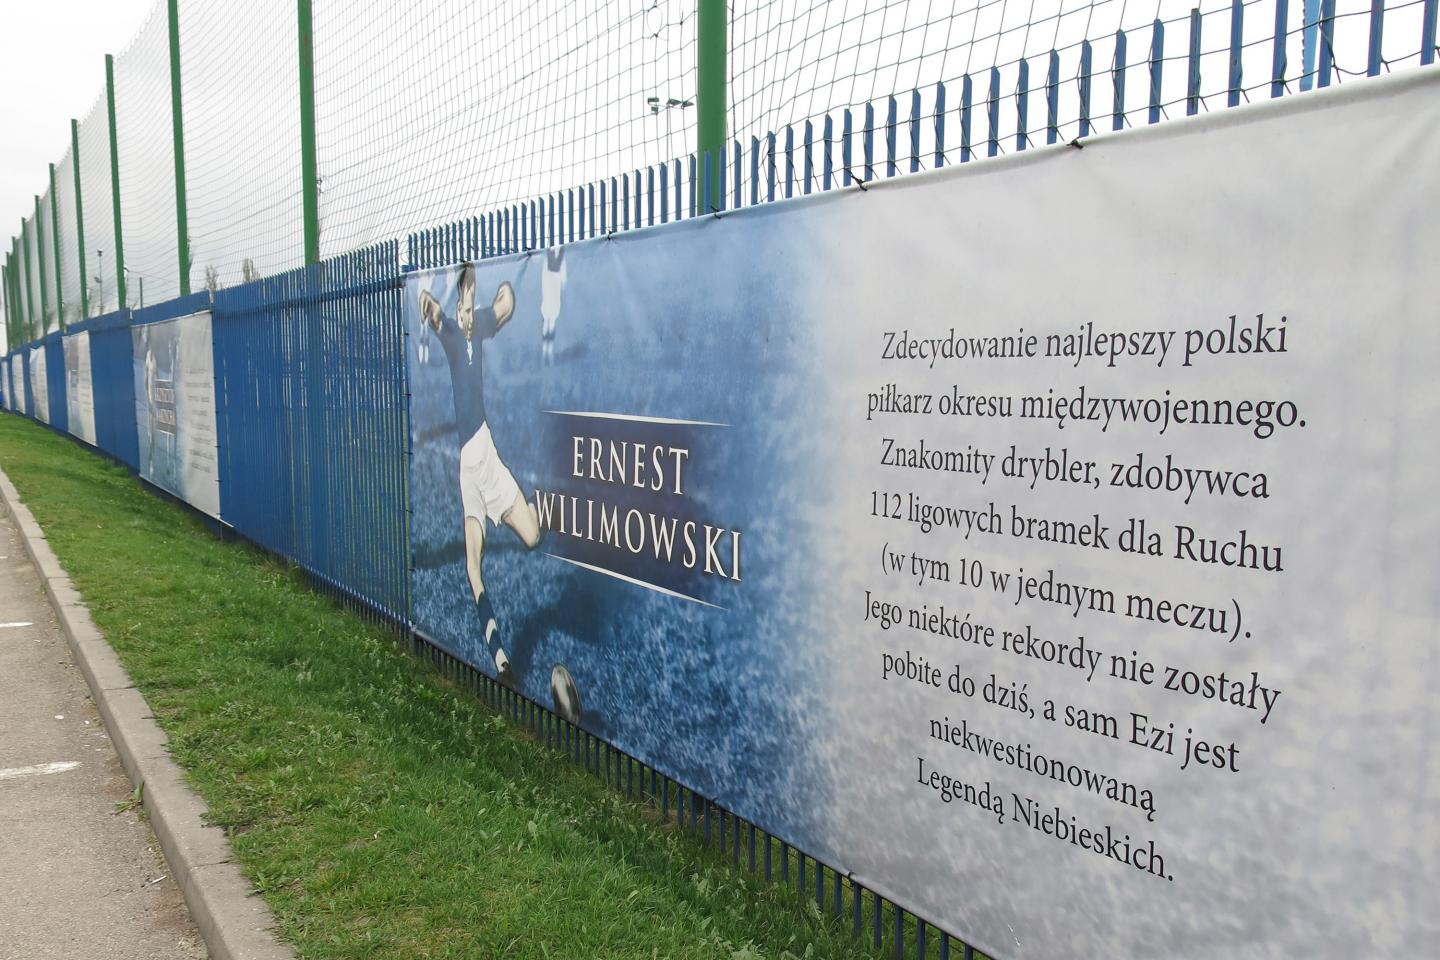 Ernest Wilimowski po 1939 roku na wiele lat zniknął z kart historii polskiego futbolu. Pamięć o nim zaczęto przywracać długo po zakończeniu II wojny światowej. Dopiero w XXI wieku na ogrodzeniu stadionu chorzowskiego Ruchu pojawił się baner upamiętniający znakomitego piłkarza Niebieskich.